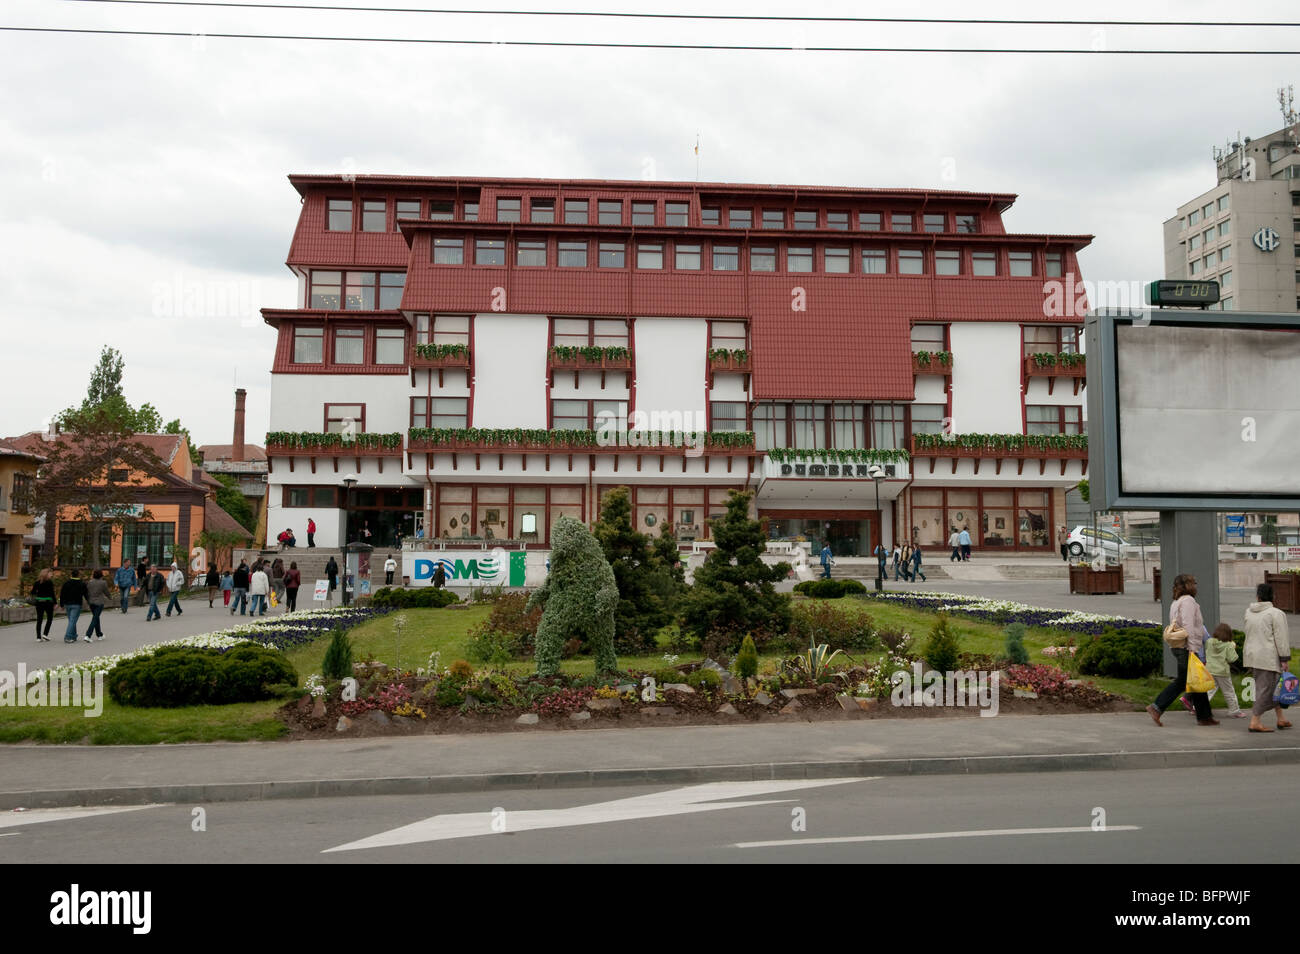 Bâtiment typique de Sibiu Roumanie Europe de l'Est Banque D'Images